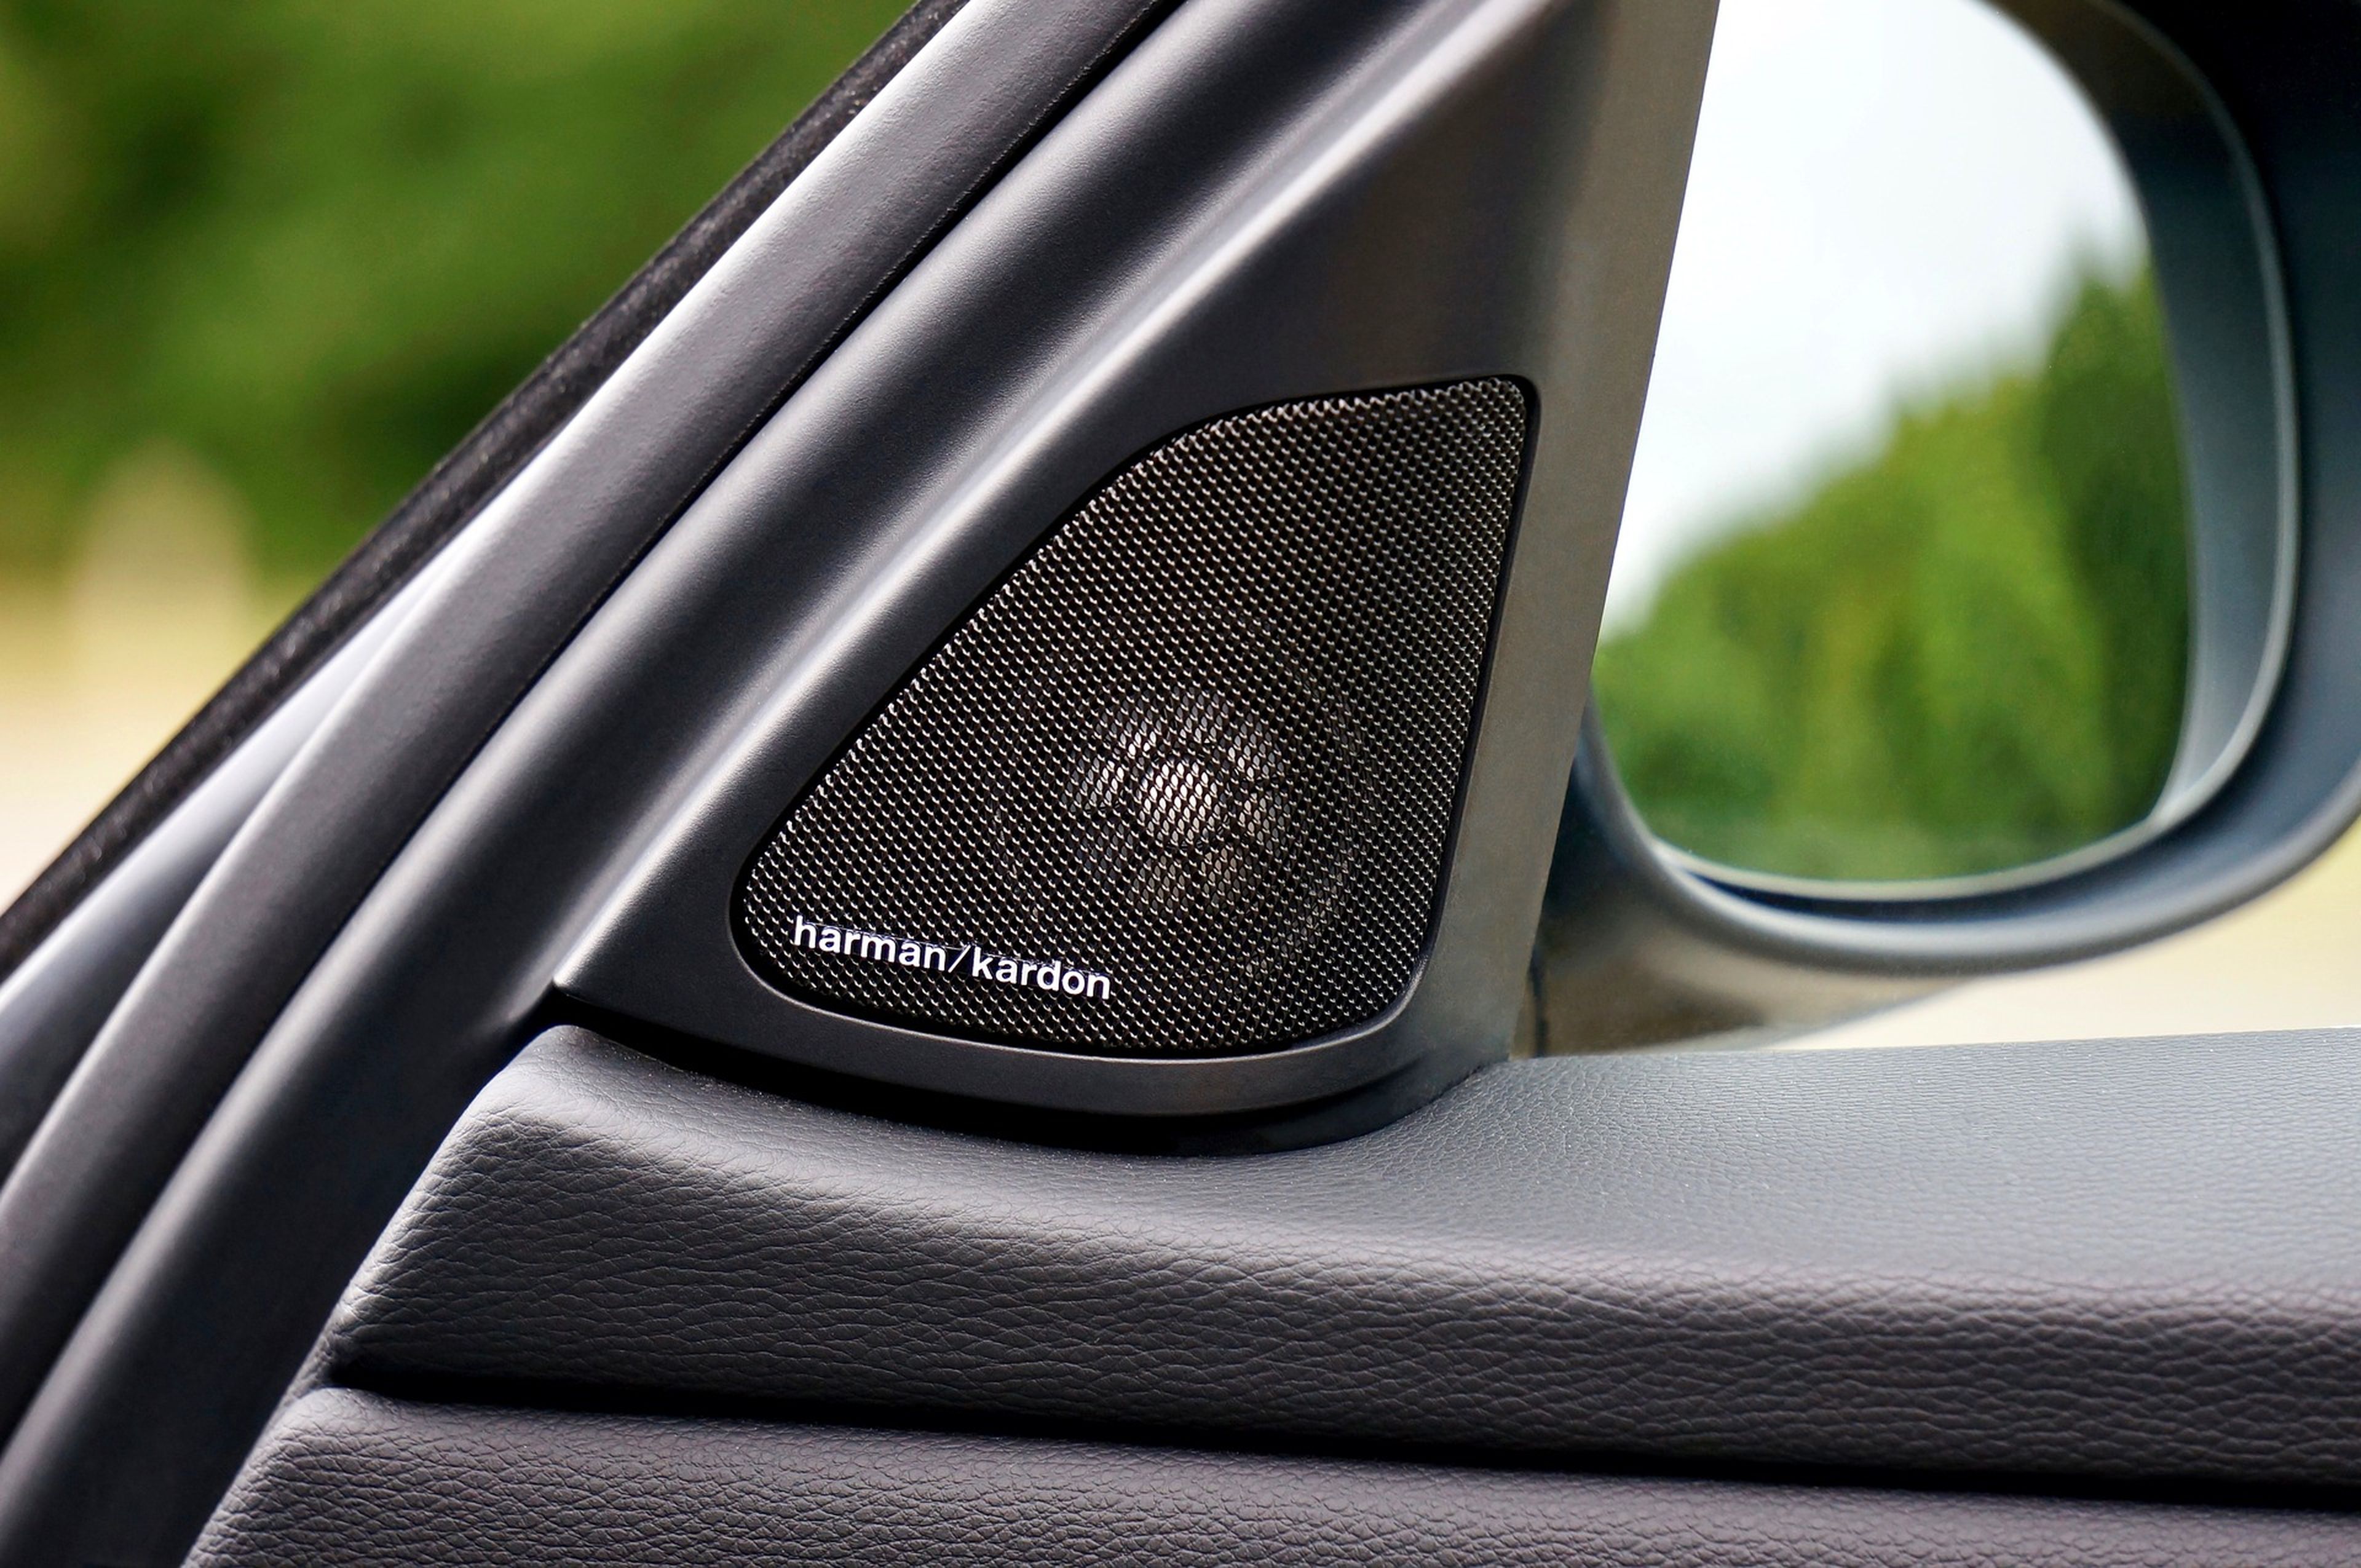 Sube el volumen del coche a un nuevo nivel con este equipamiento de sonido  y audio